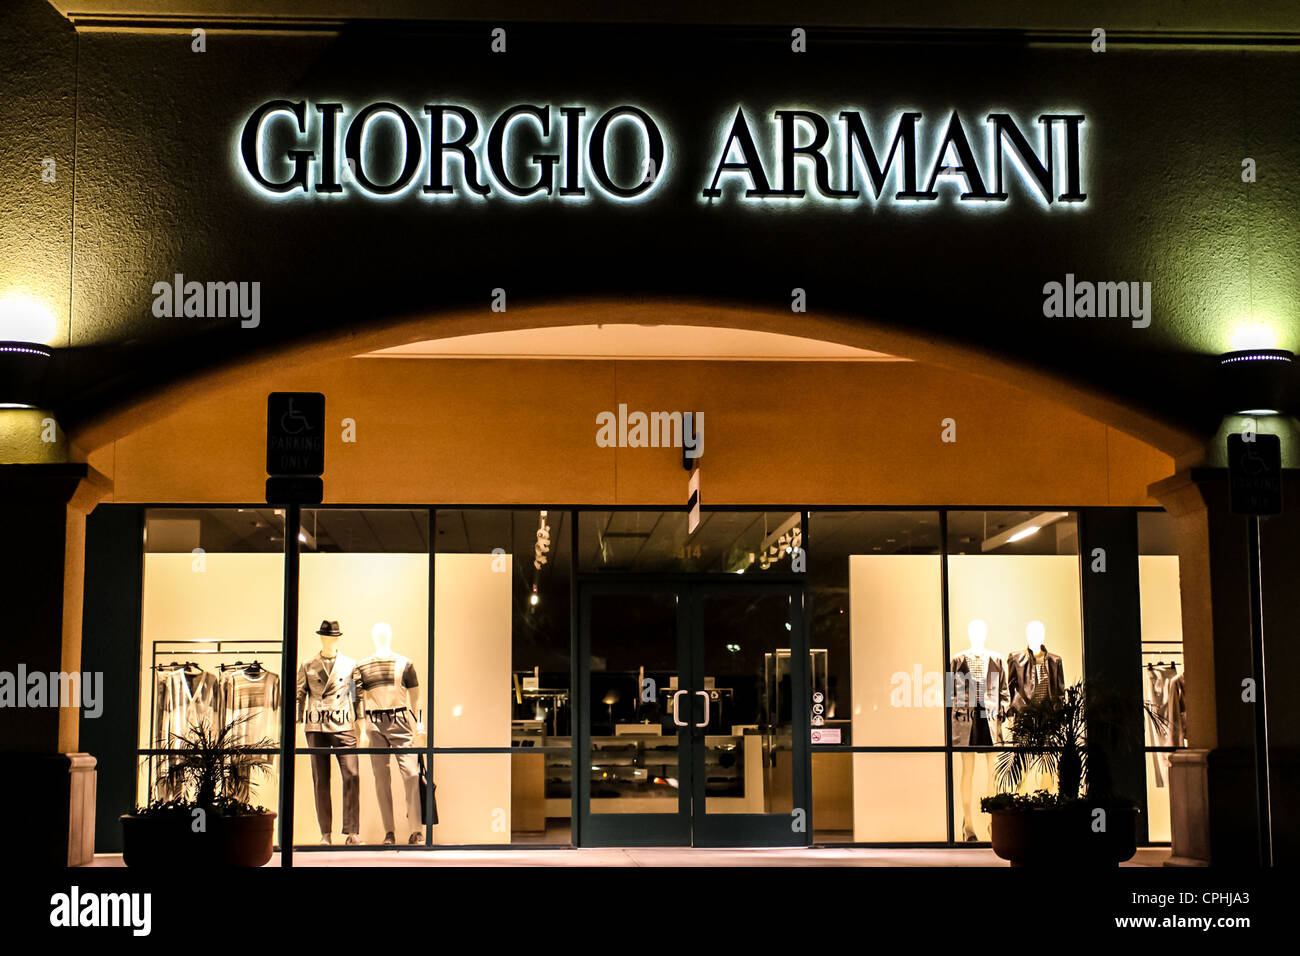 Giorgio Armani outlet store in Camarillo California Stock Photo - Alamy